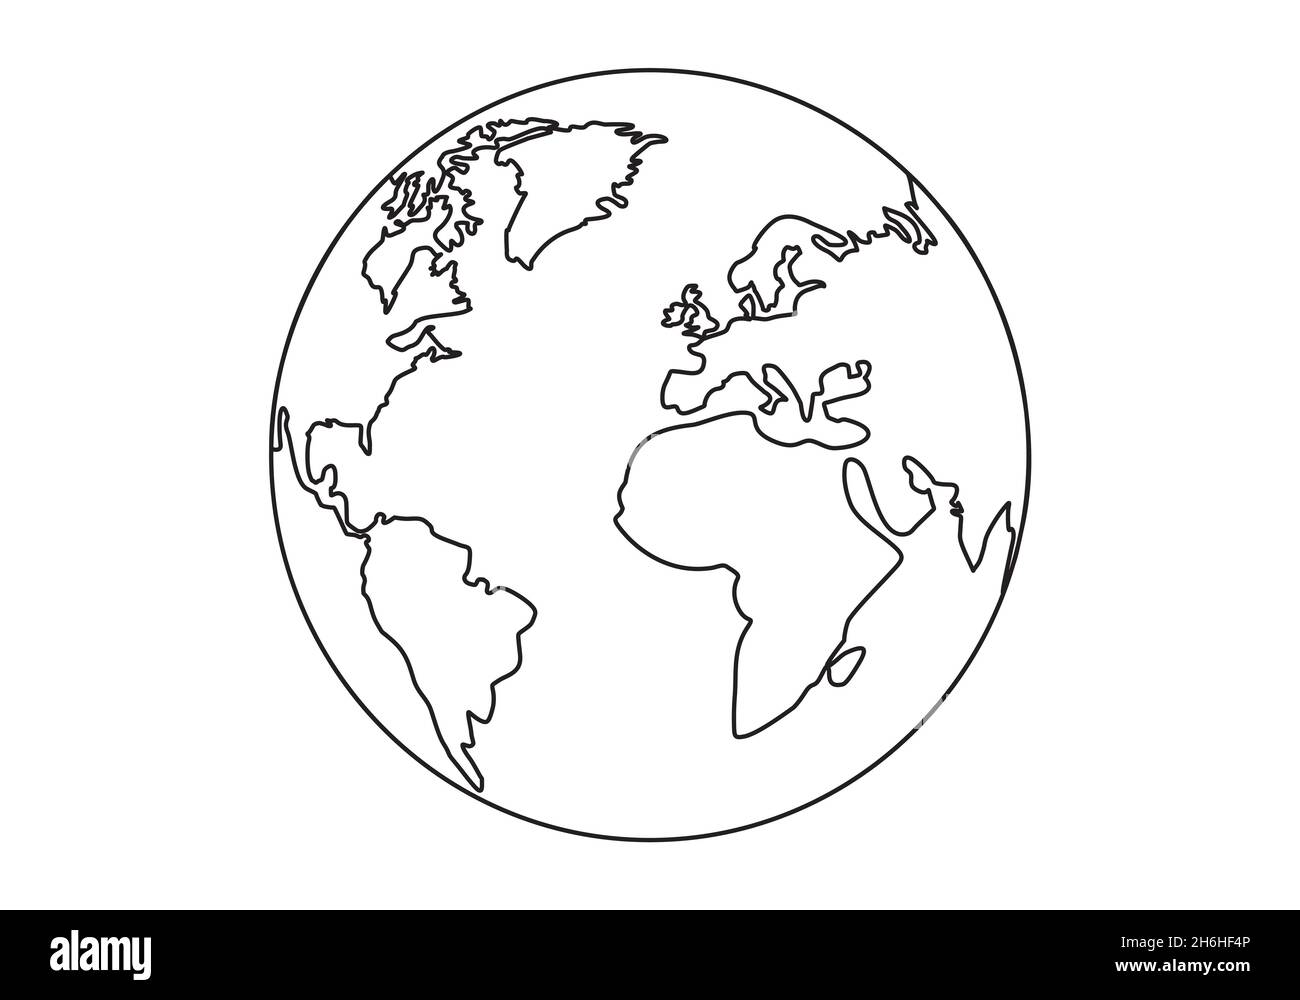 Earth World Globe kontinuierliche einfache Linie im Vektorformat Stock Vektor